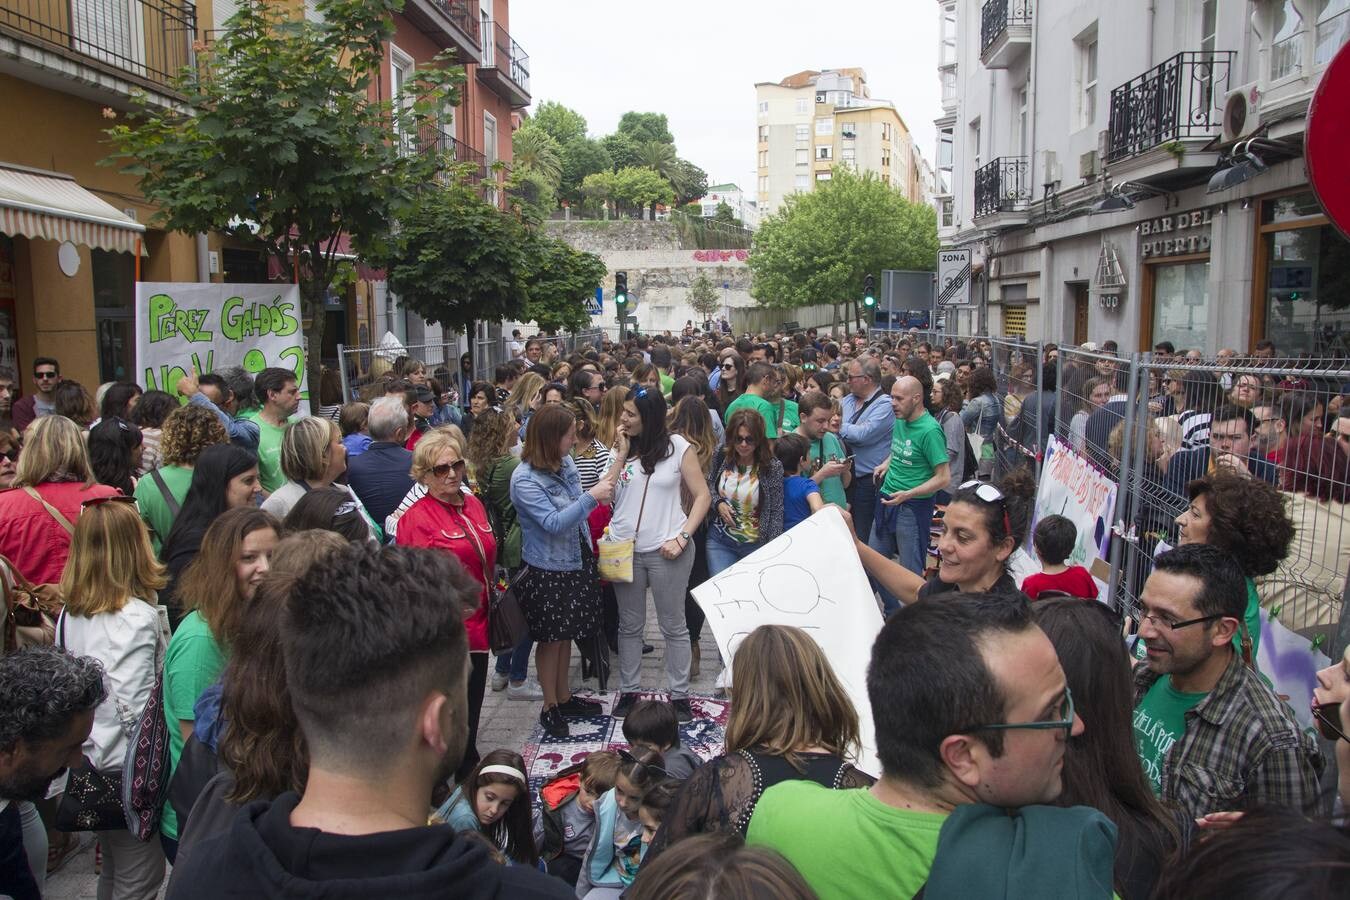 Fotos: Los profesores se manifiestan en Santander en contra de ampliar la jornada reducida